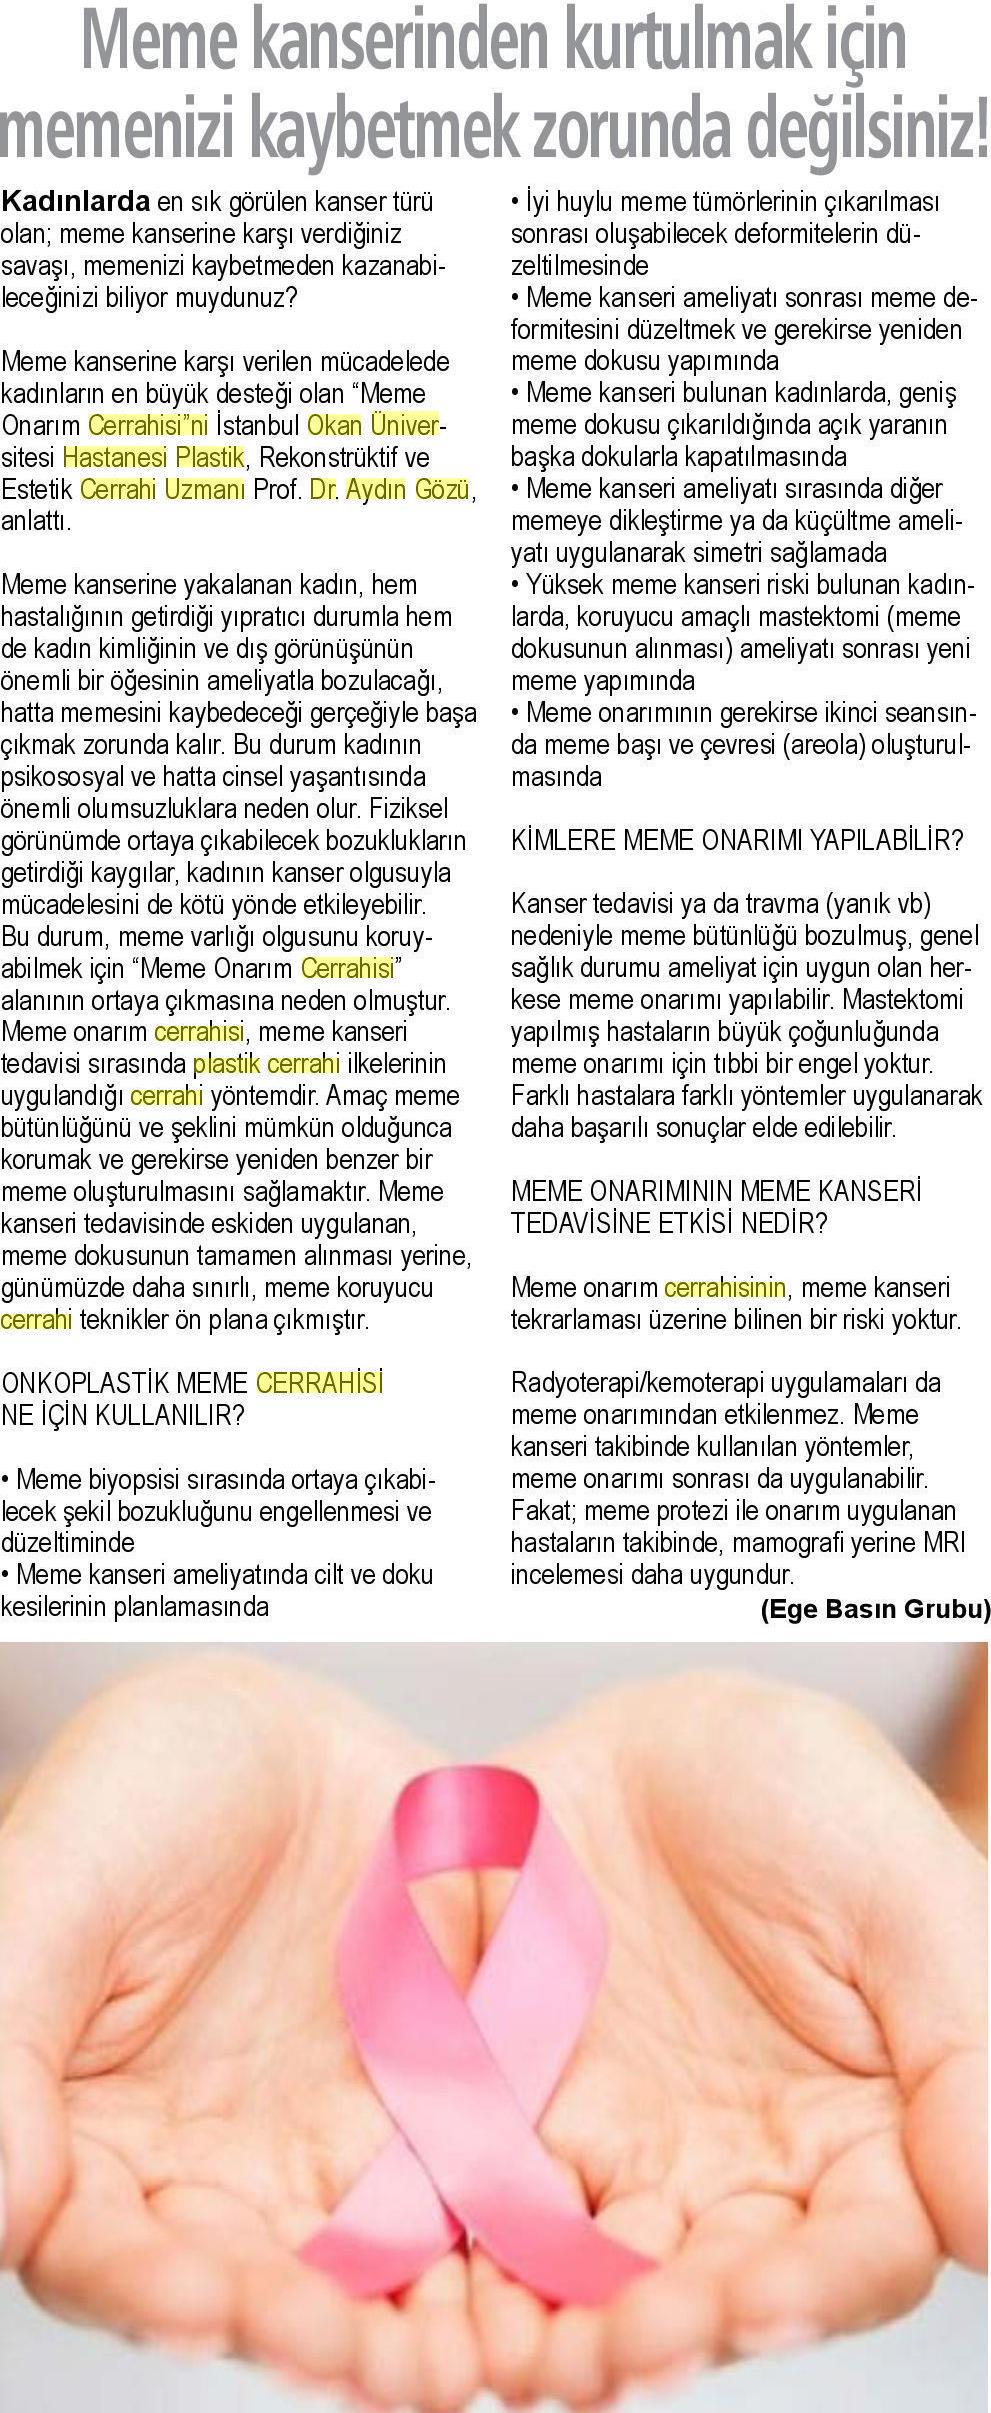 23.03.2019 Sağlık Gazetesi MEMENİZİ KAYBETMEK ZORUNDA DEĞİLSİNİZ!